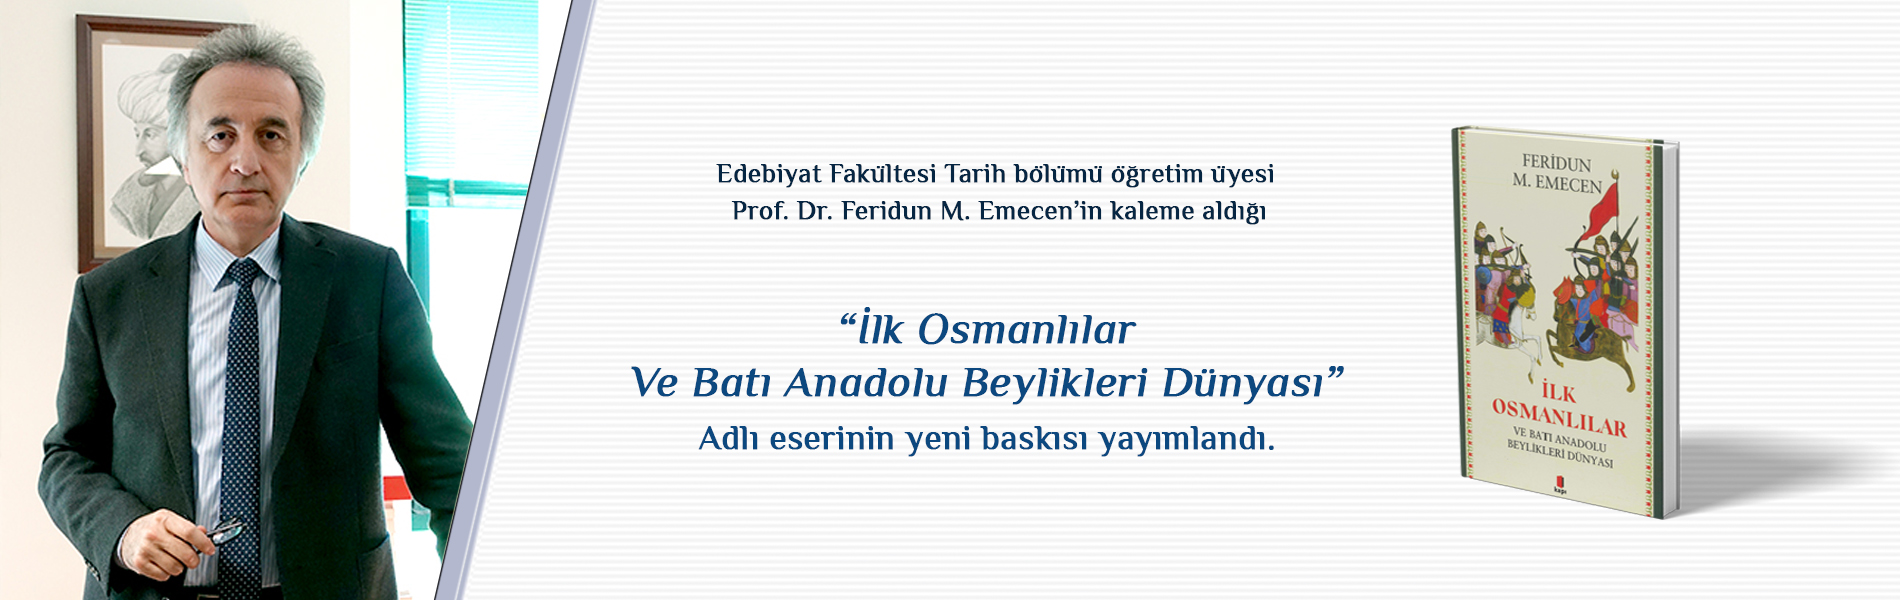 Prof. Dr. Feridun M. Emecen’in Kaleme Aldığı İlk Osmanlılar ve Batı Anadolu Beylikleri Dünyası Başlıklı Eserinin Yeni Baskısı Yayımlandı